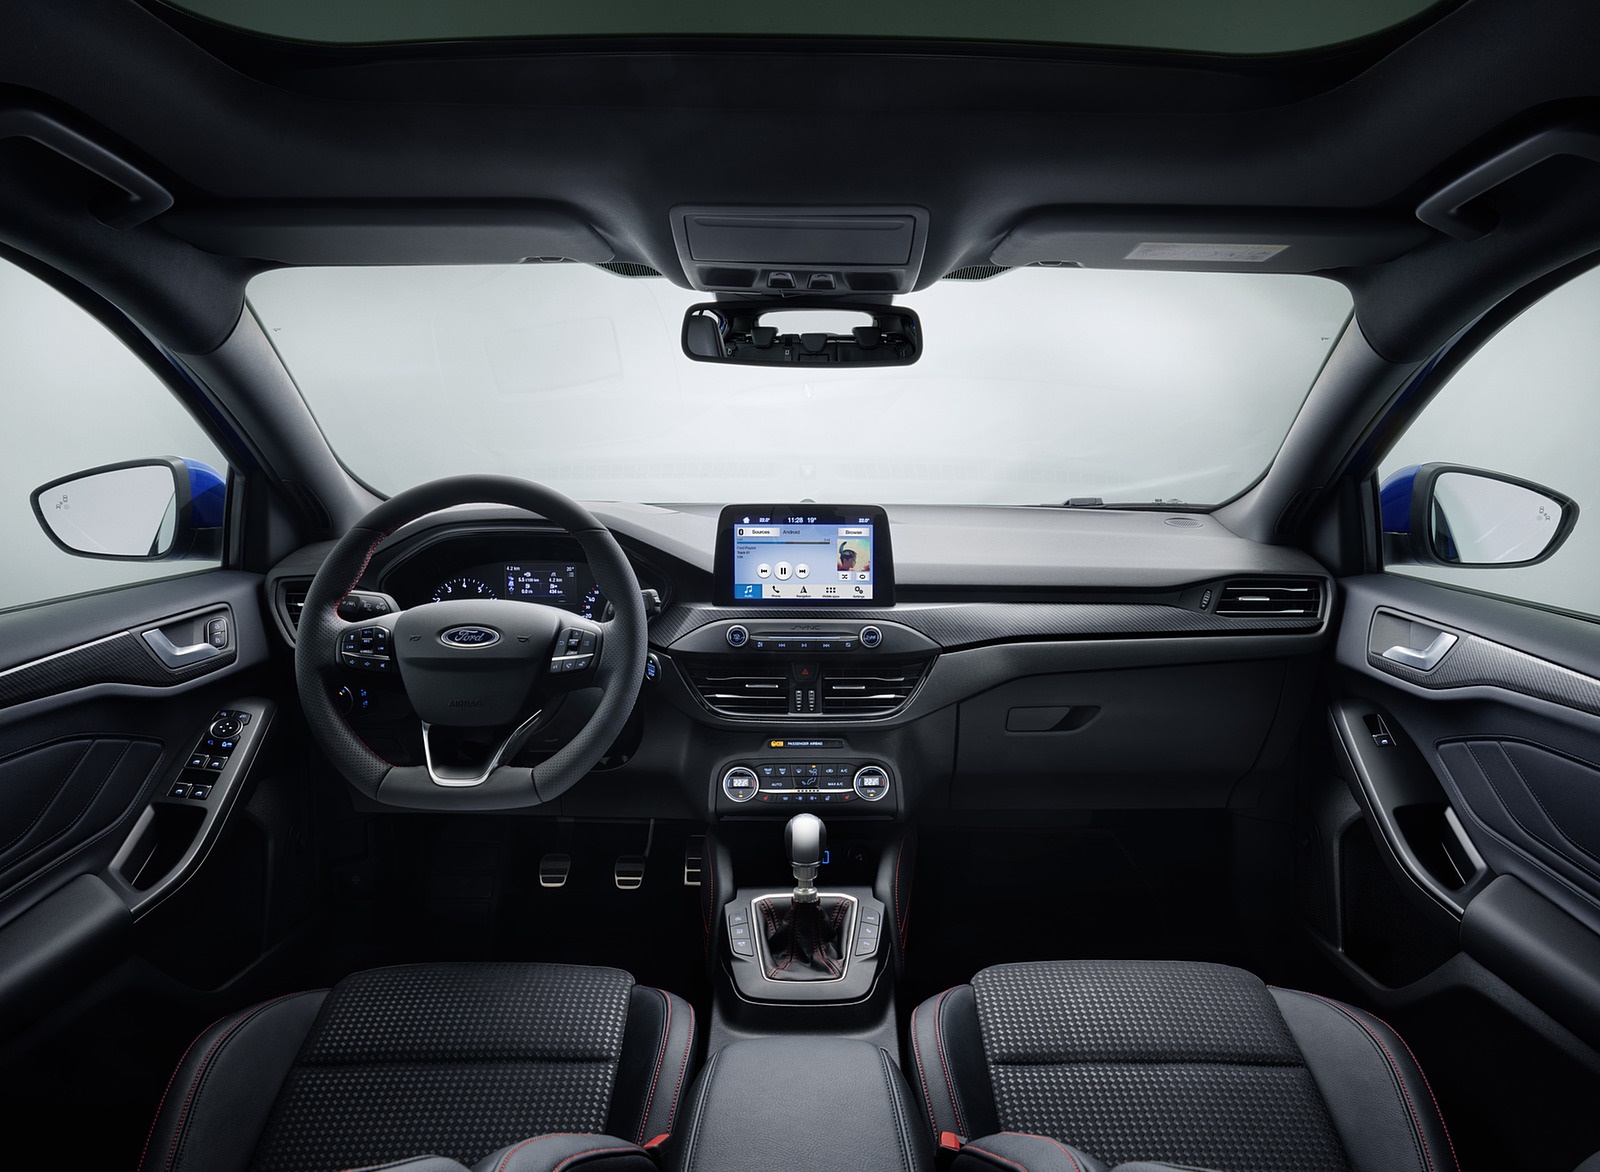 2019 Ford Focus Hatchback ST-Line Interior Cockpit Wallpapers #31 of 90